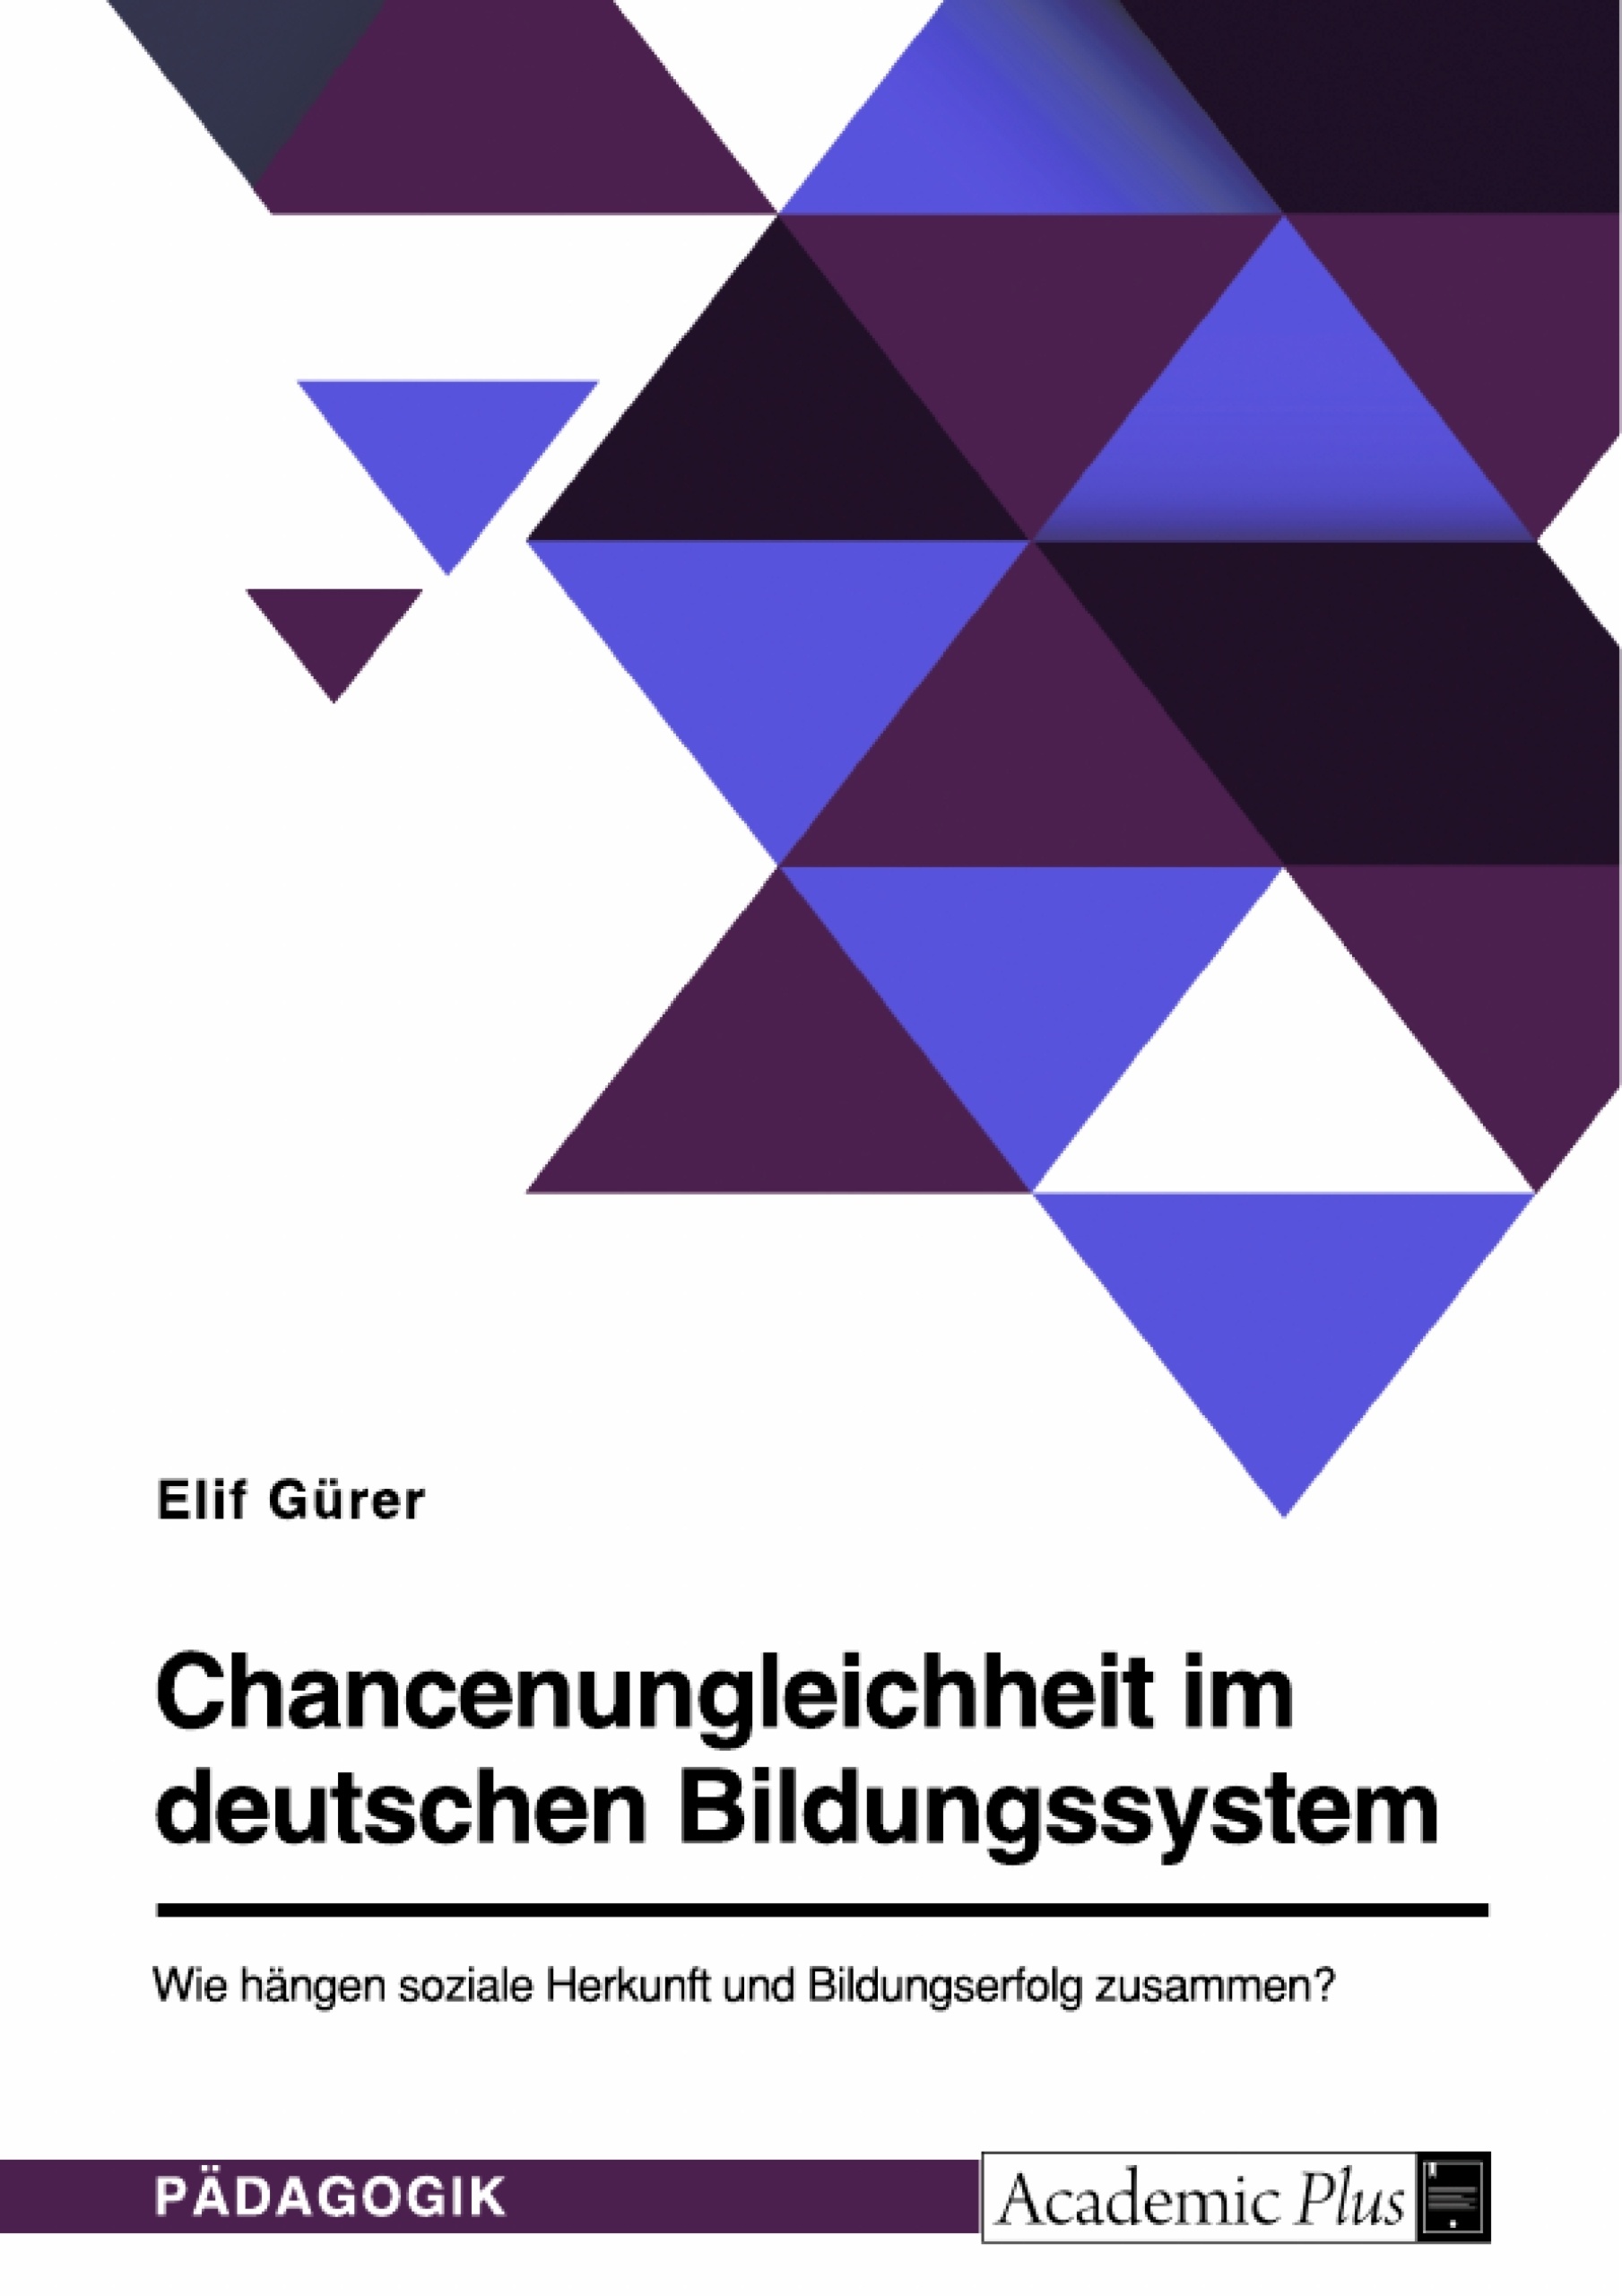 Titel: Chancenungleichheit im deutschen Bildungssystem. Wie hängen soziale Herkunft und Bildungserfolg zusammen?